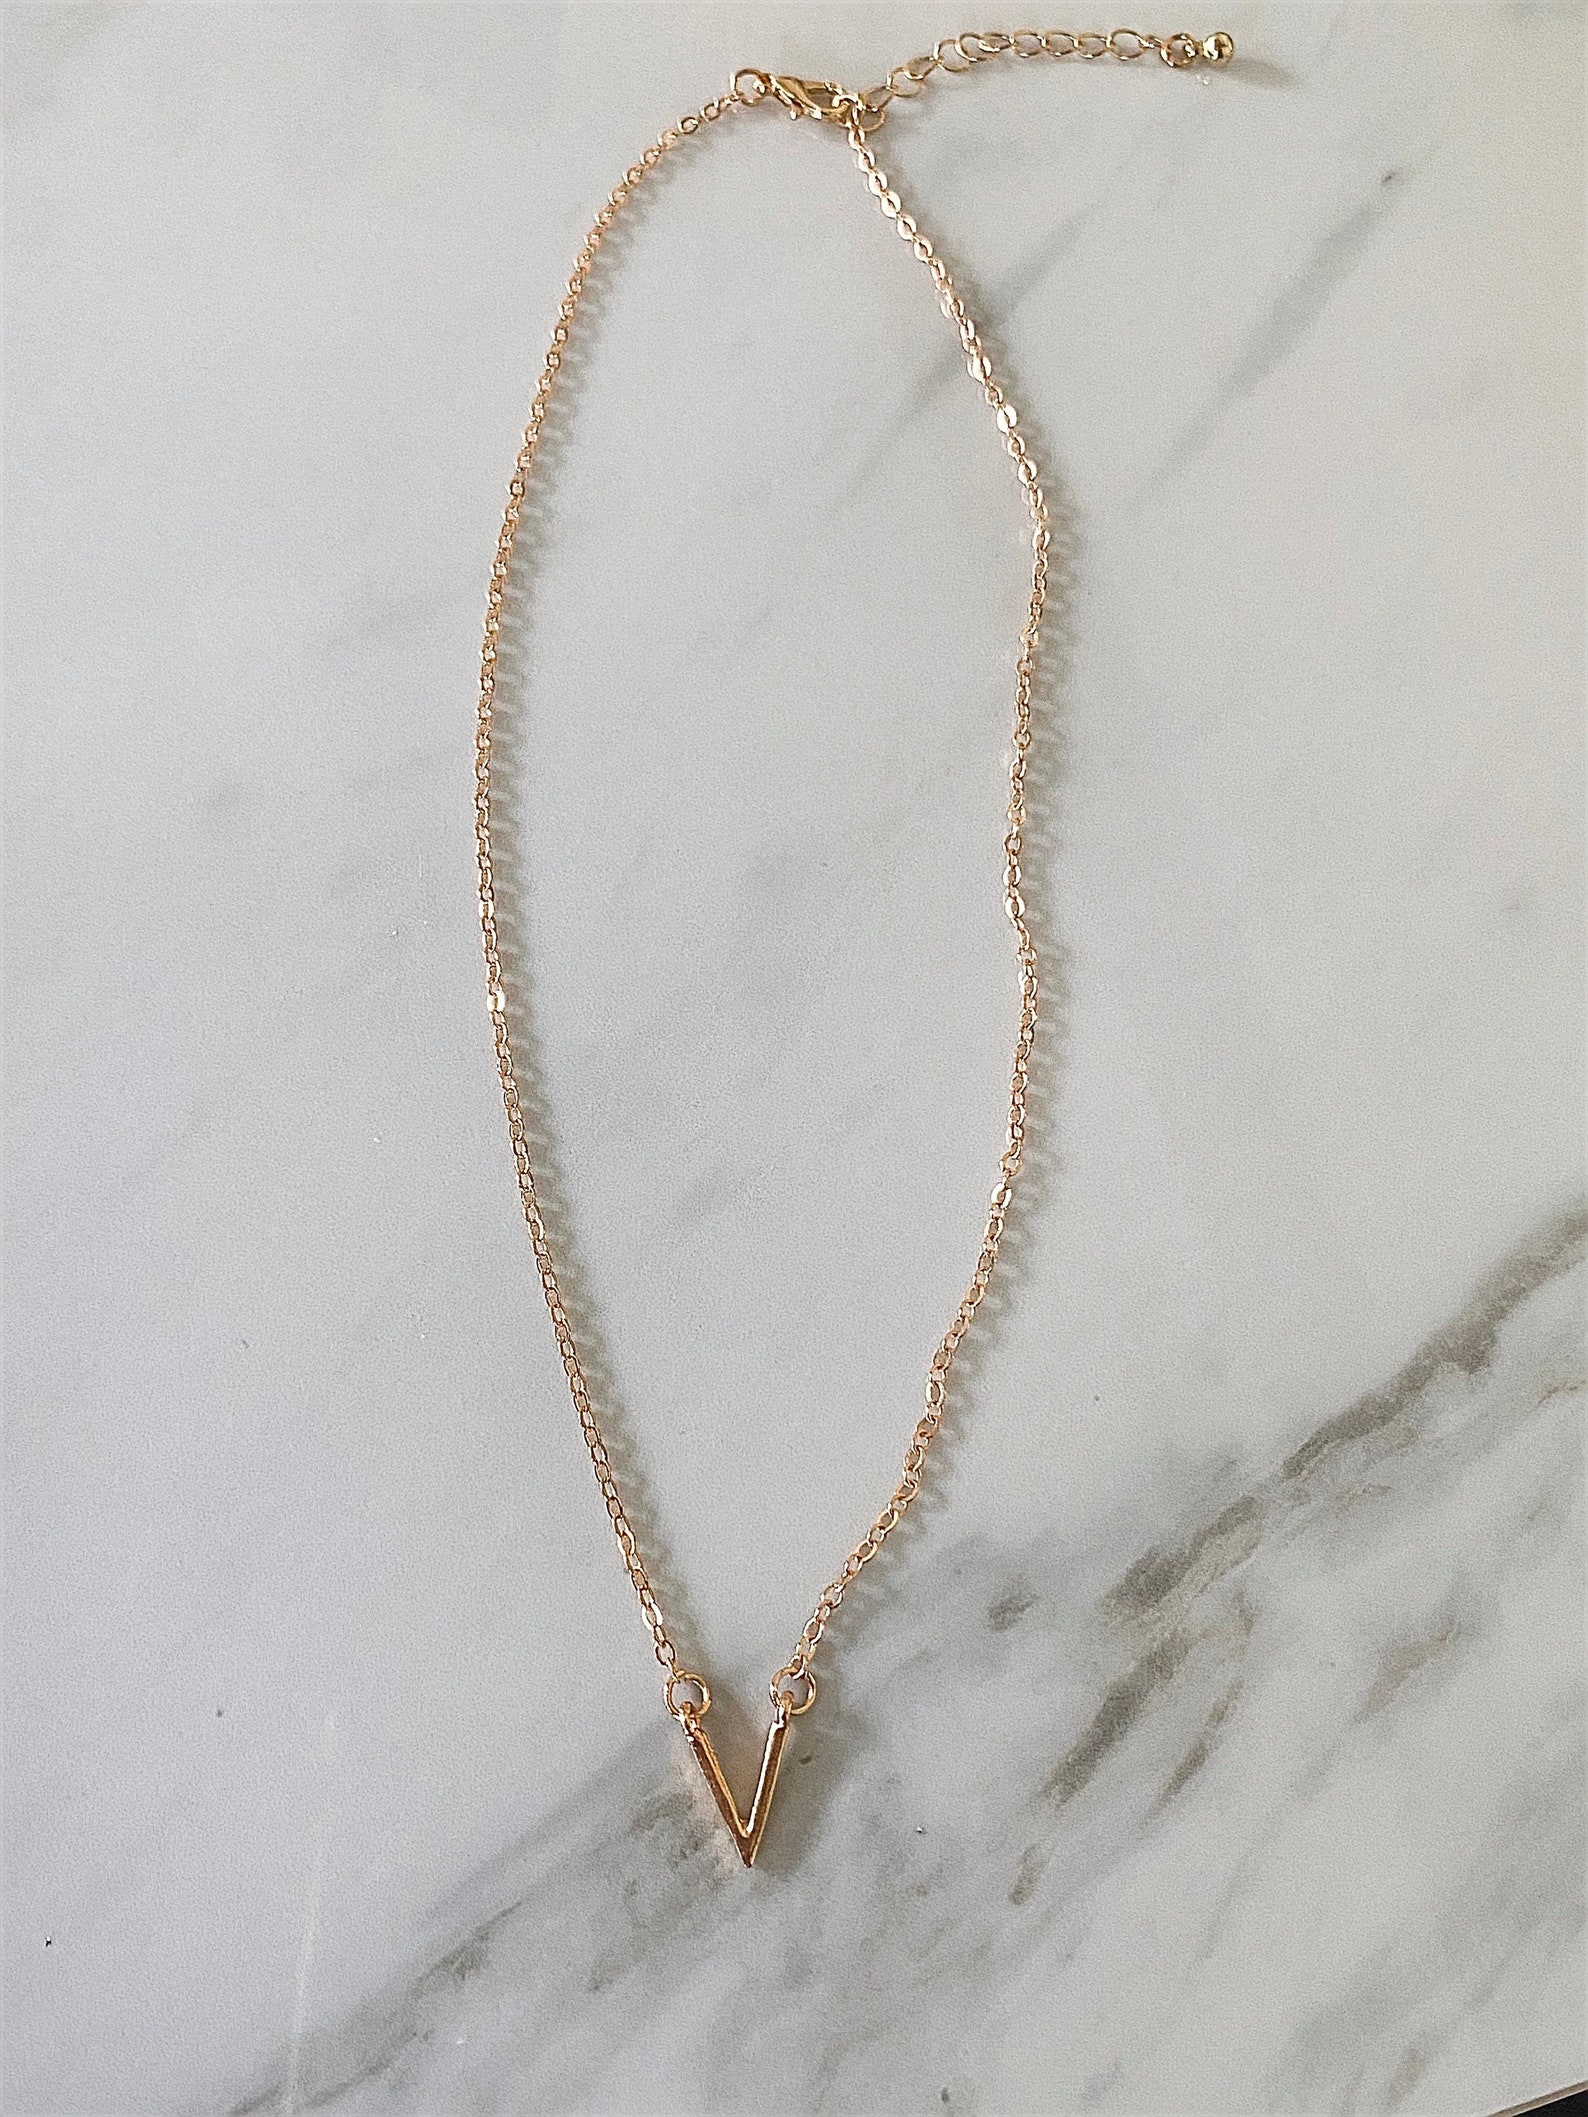 VALENTINO inspired gold V necklace | Etsy